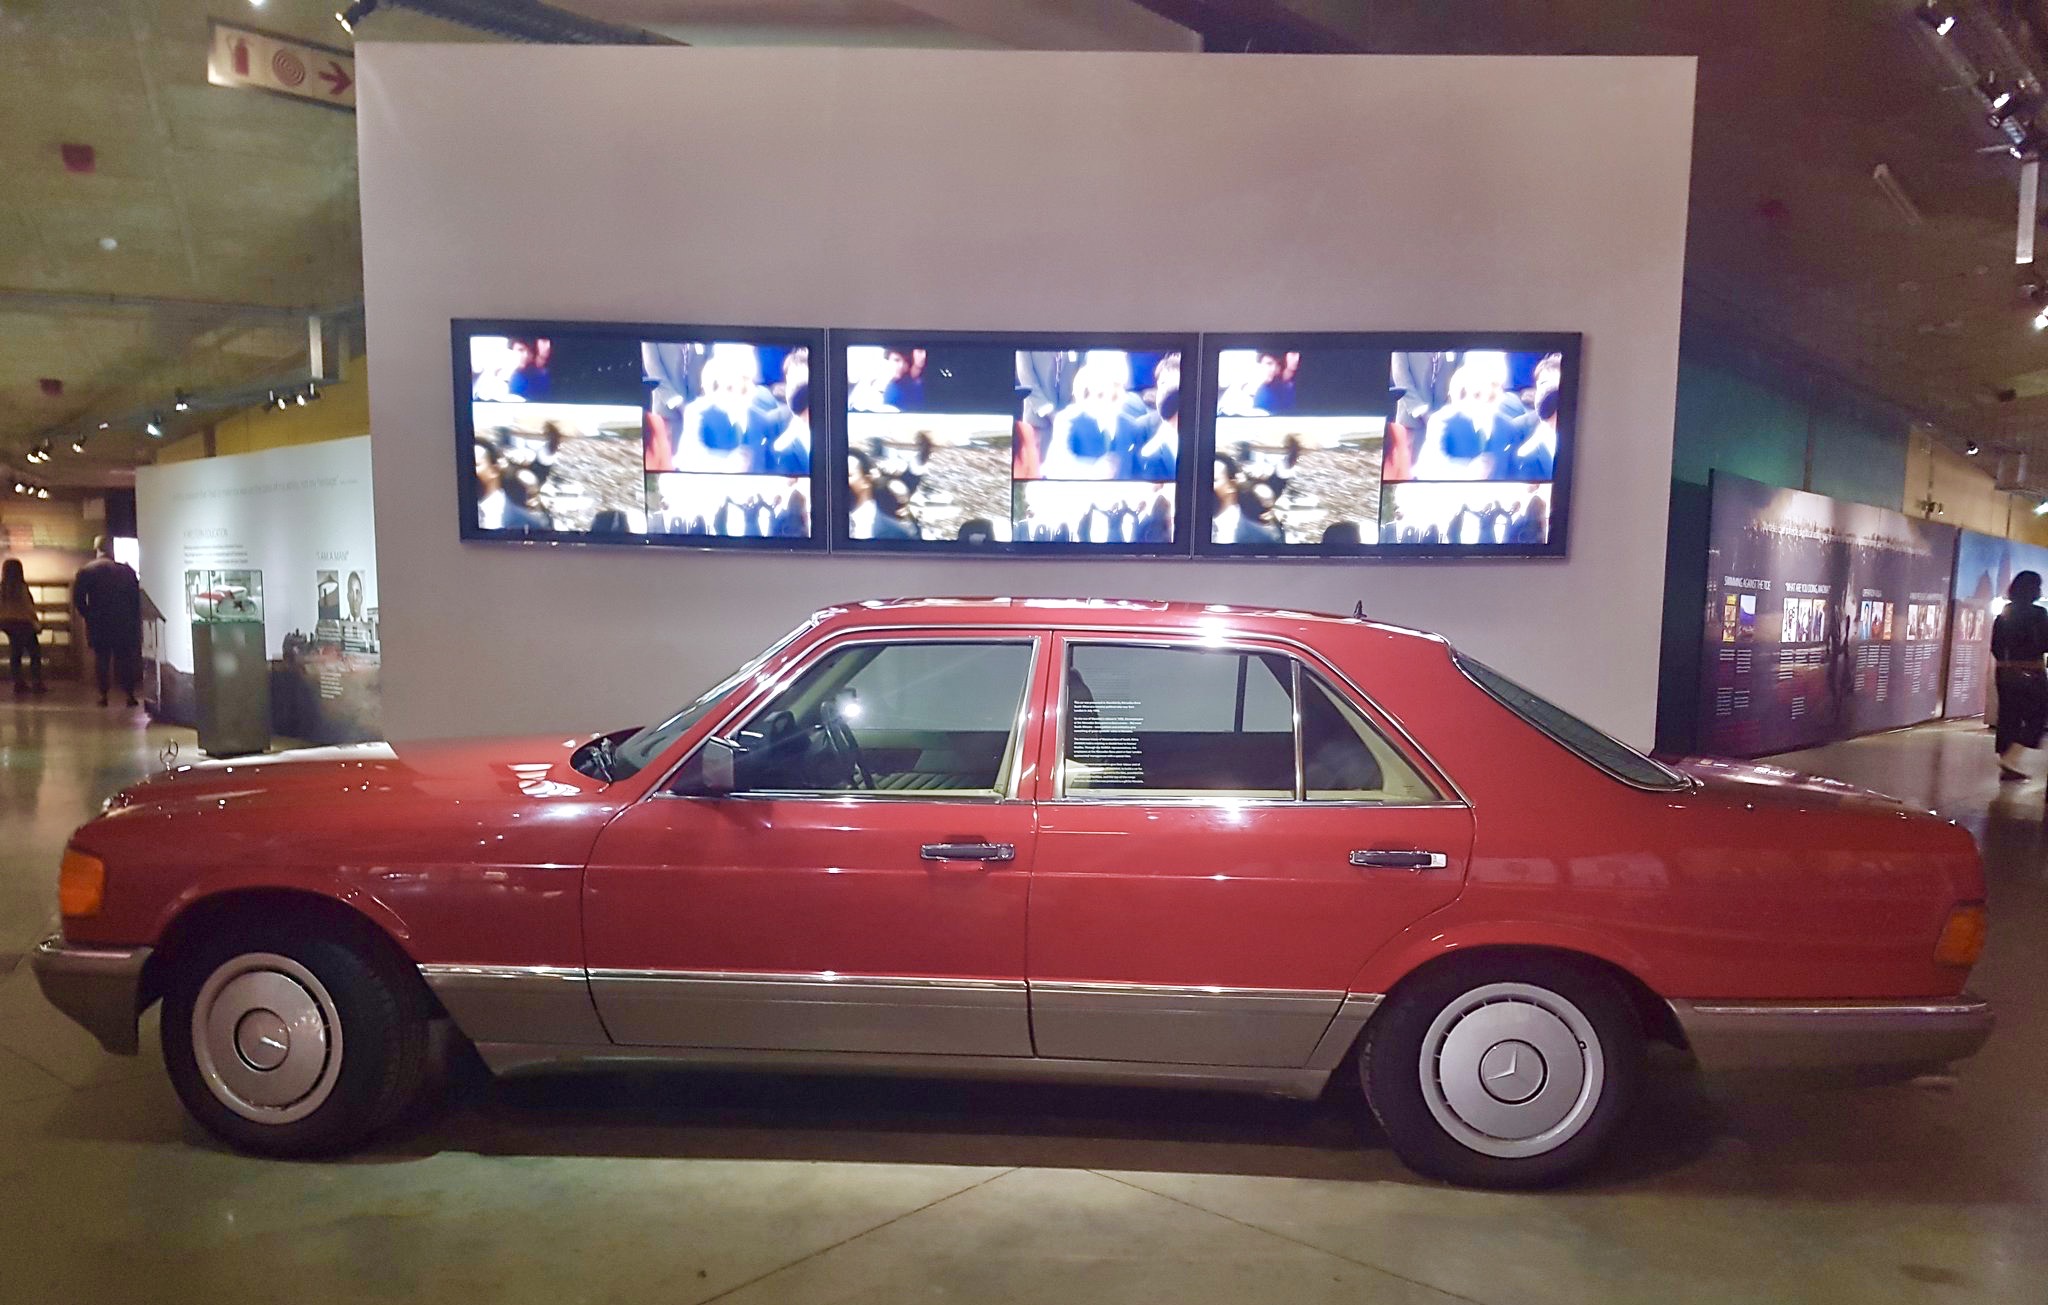 Mercedes, 126, w126, 1980-91, 1980s, S-class, 1990, 500SE, nelson mandella, red